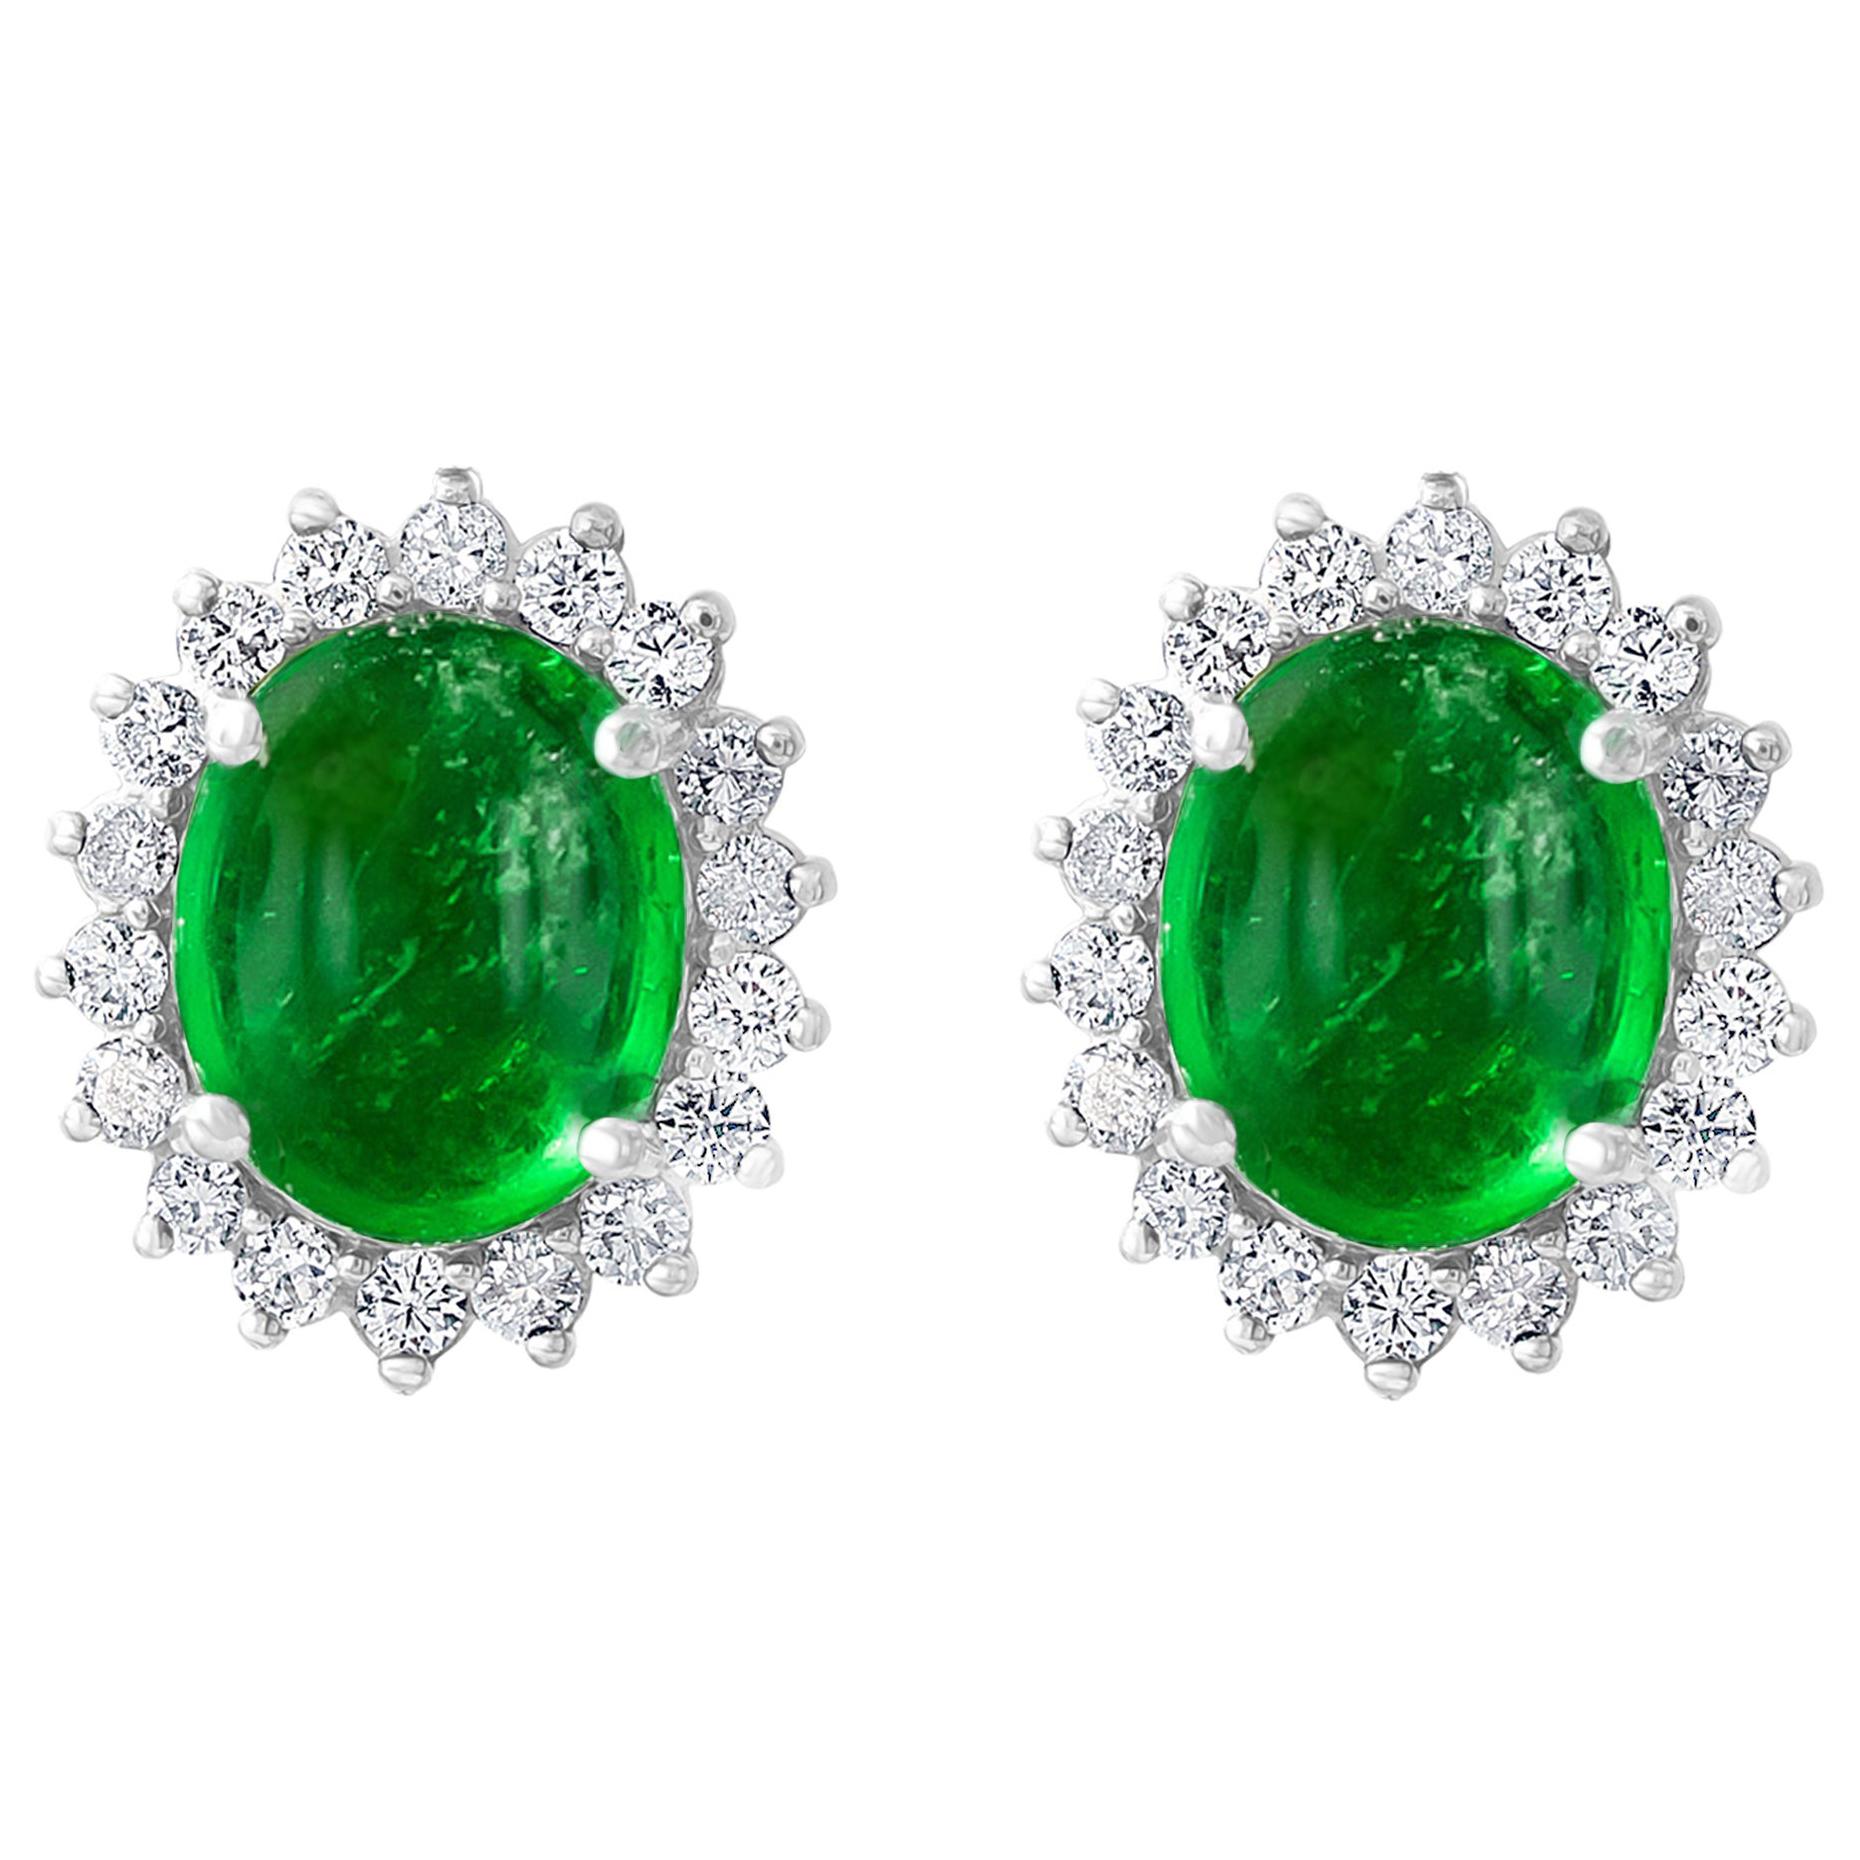 12 Ct Natural Emerald Zambia Cabochon & Diamond Stud Earring 14 Karat White Gold